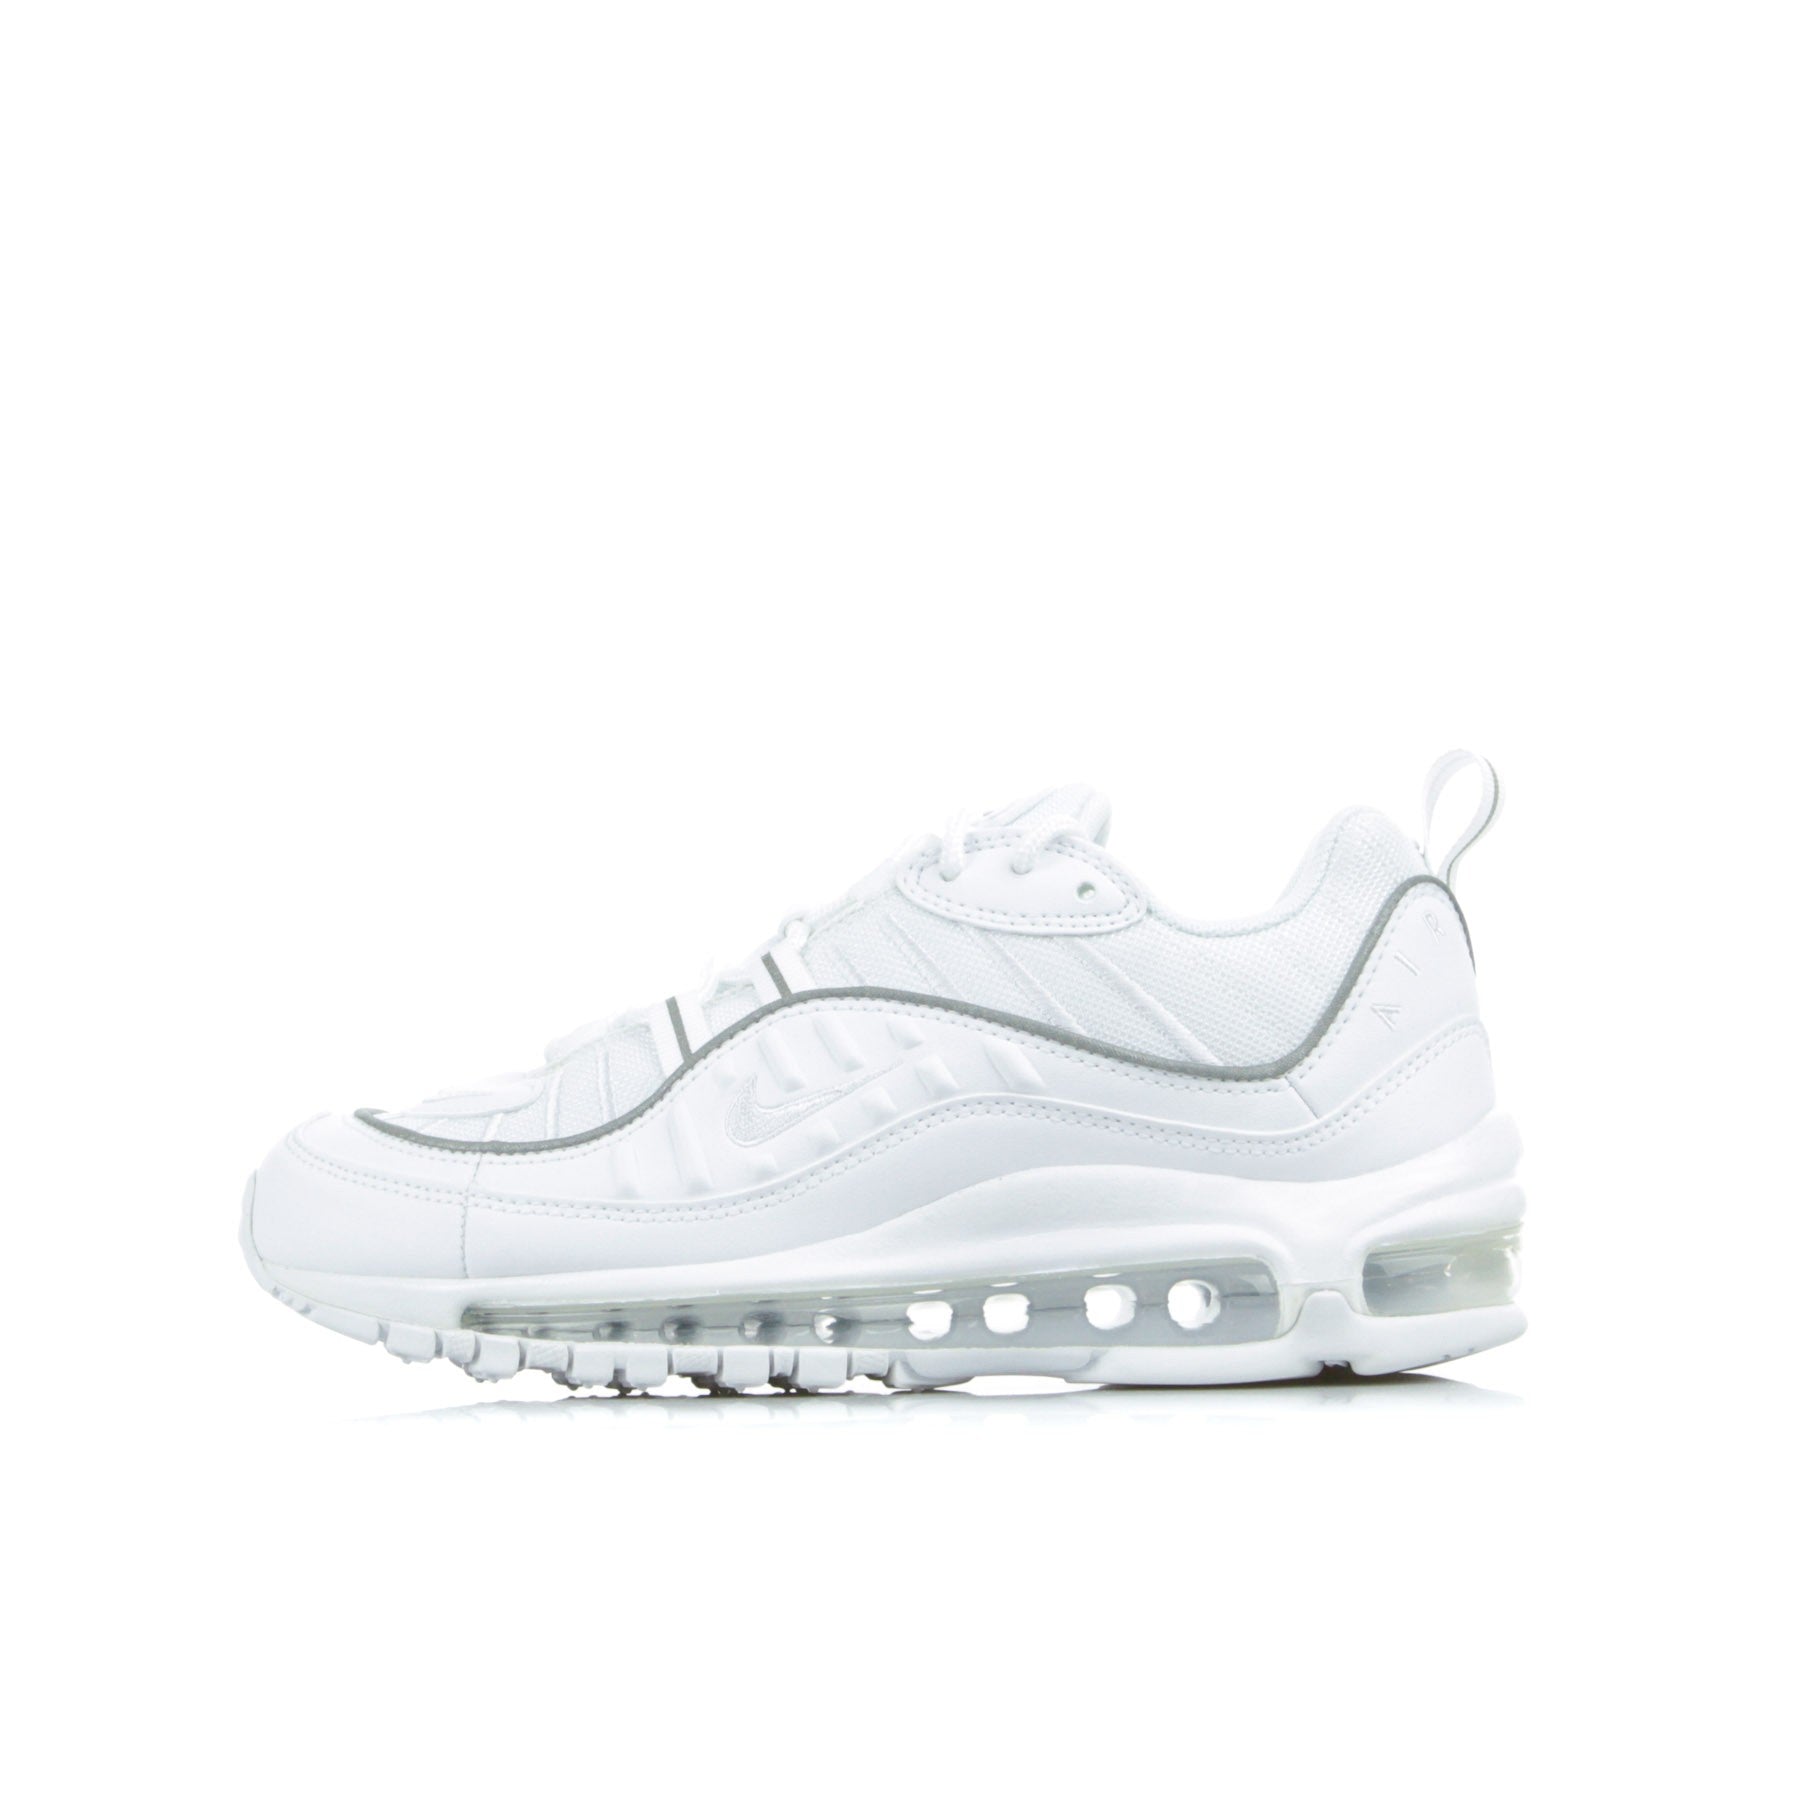 Nike, Scarpa Bassa Donna W Air Max 98, White/white/white